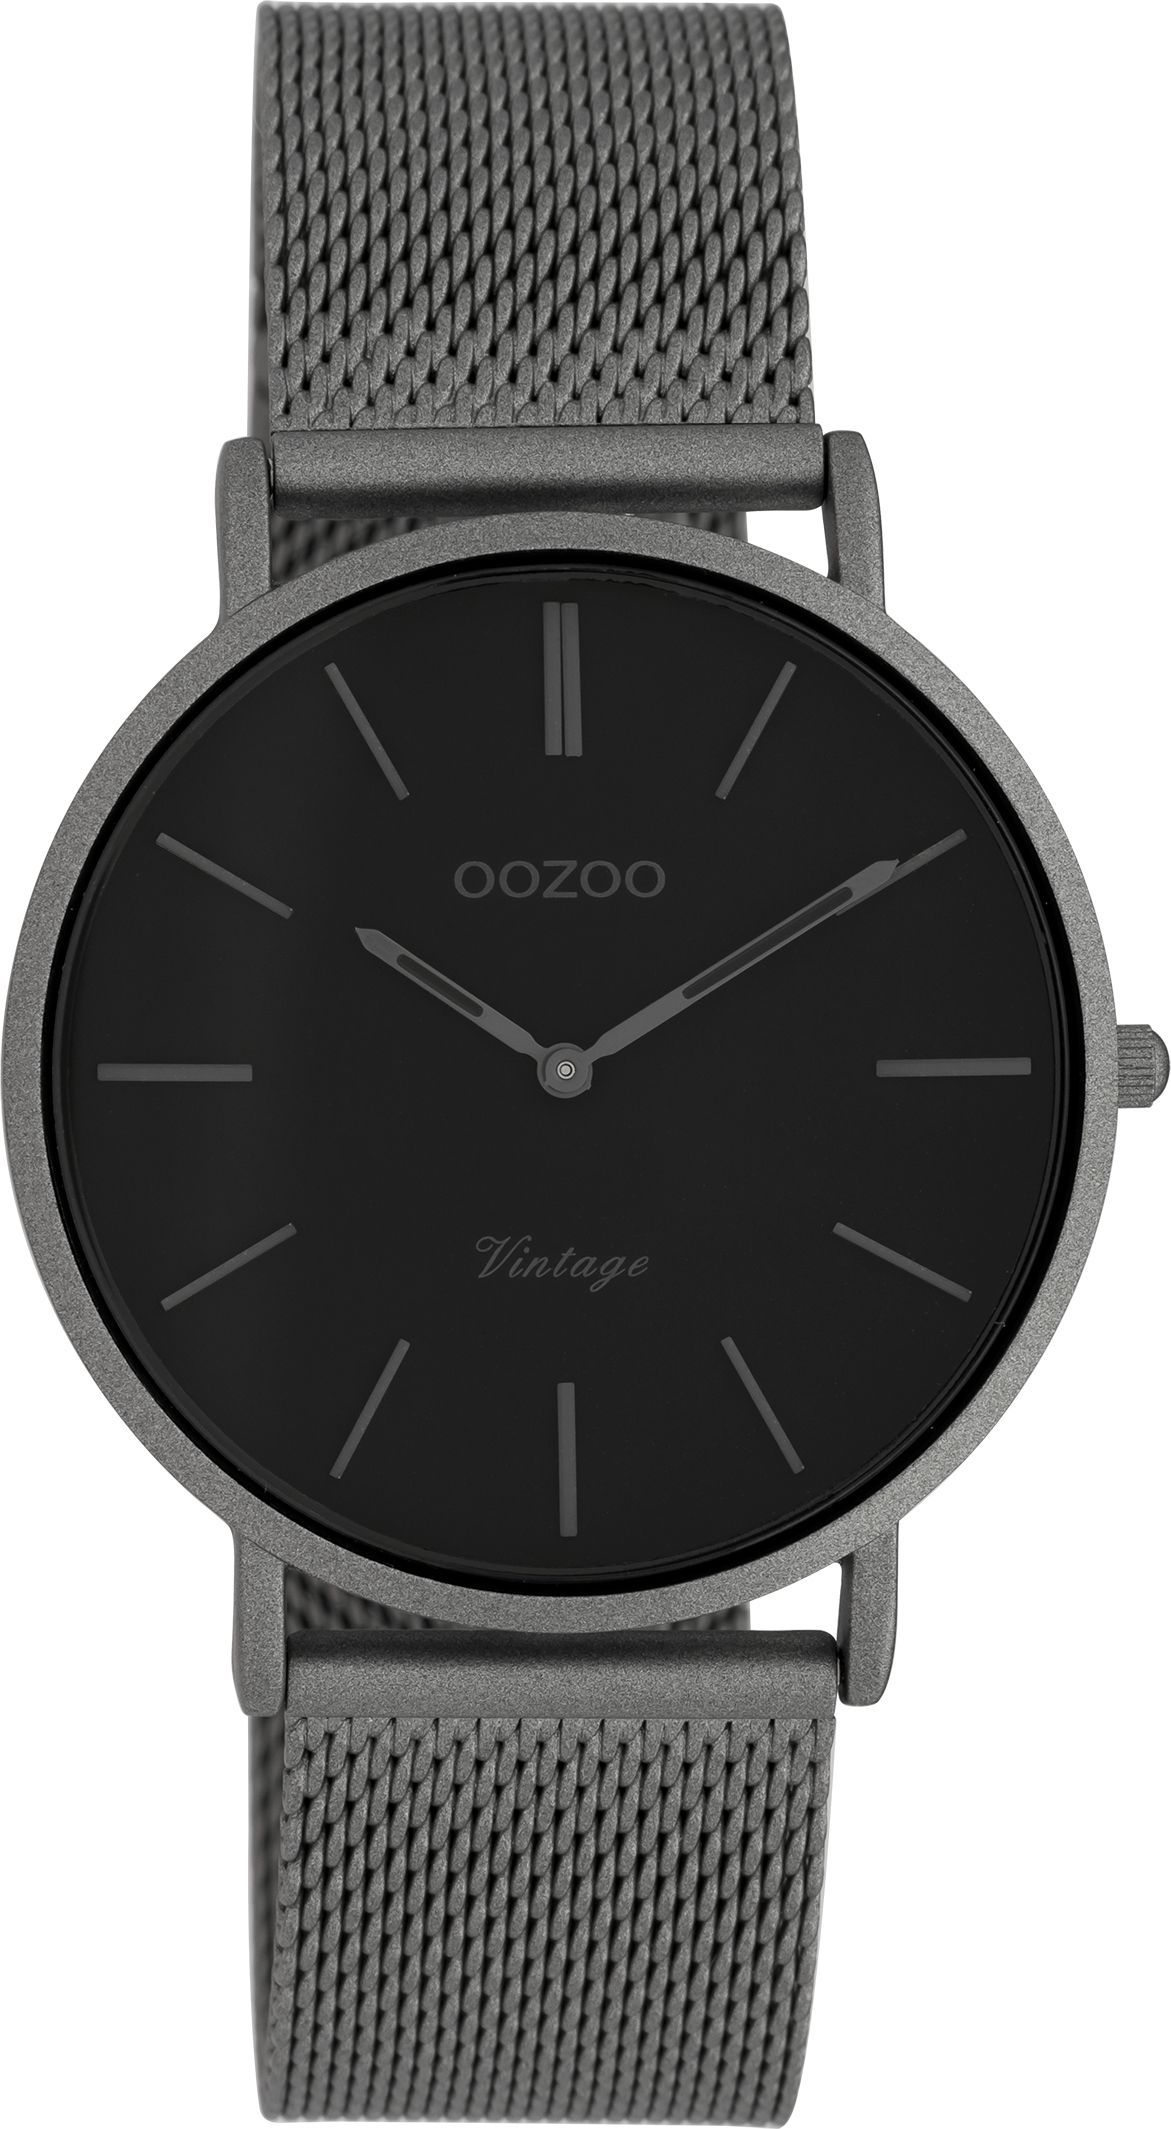 OOZOO Vintage C9930